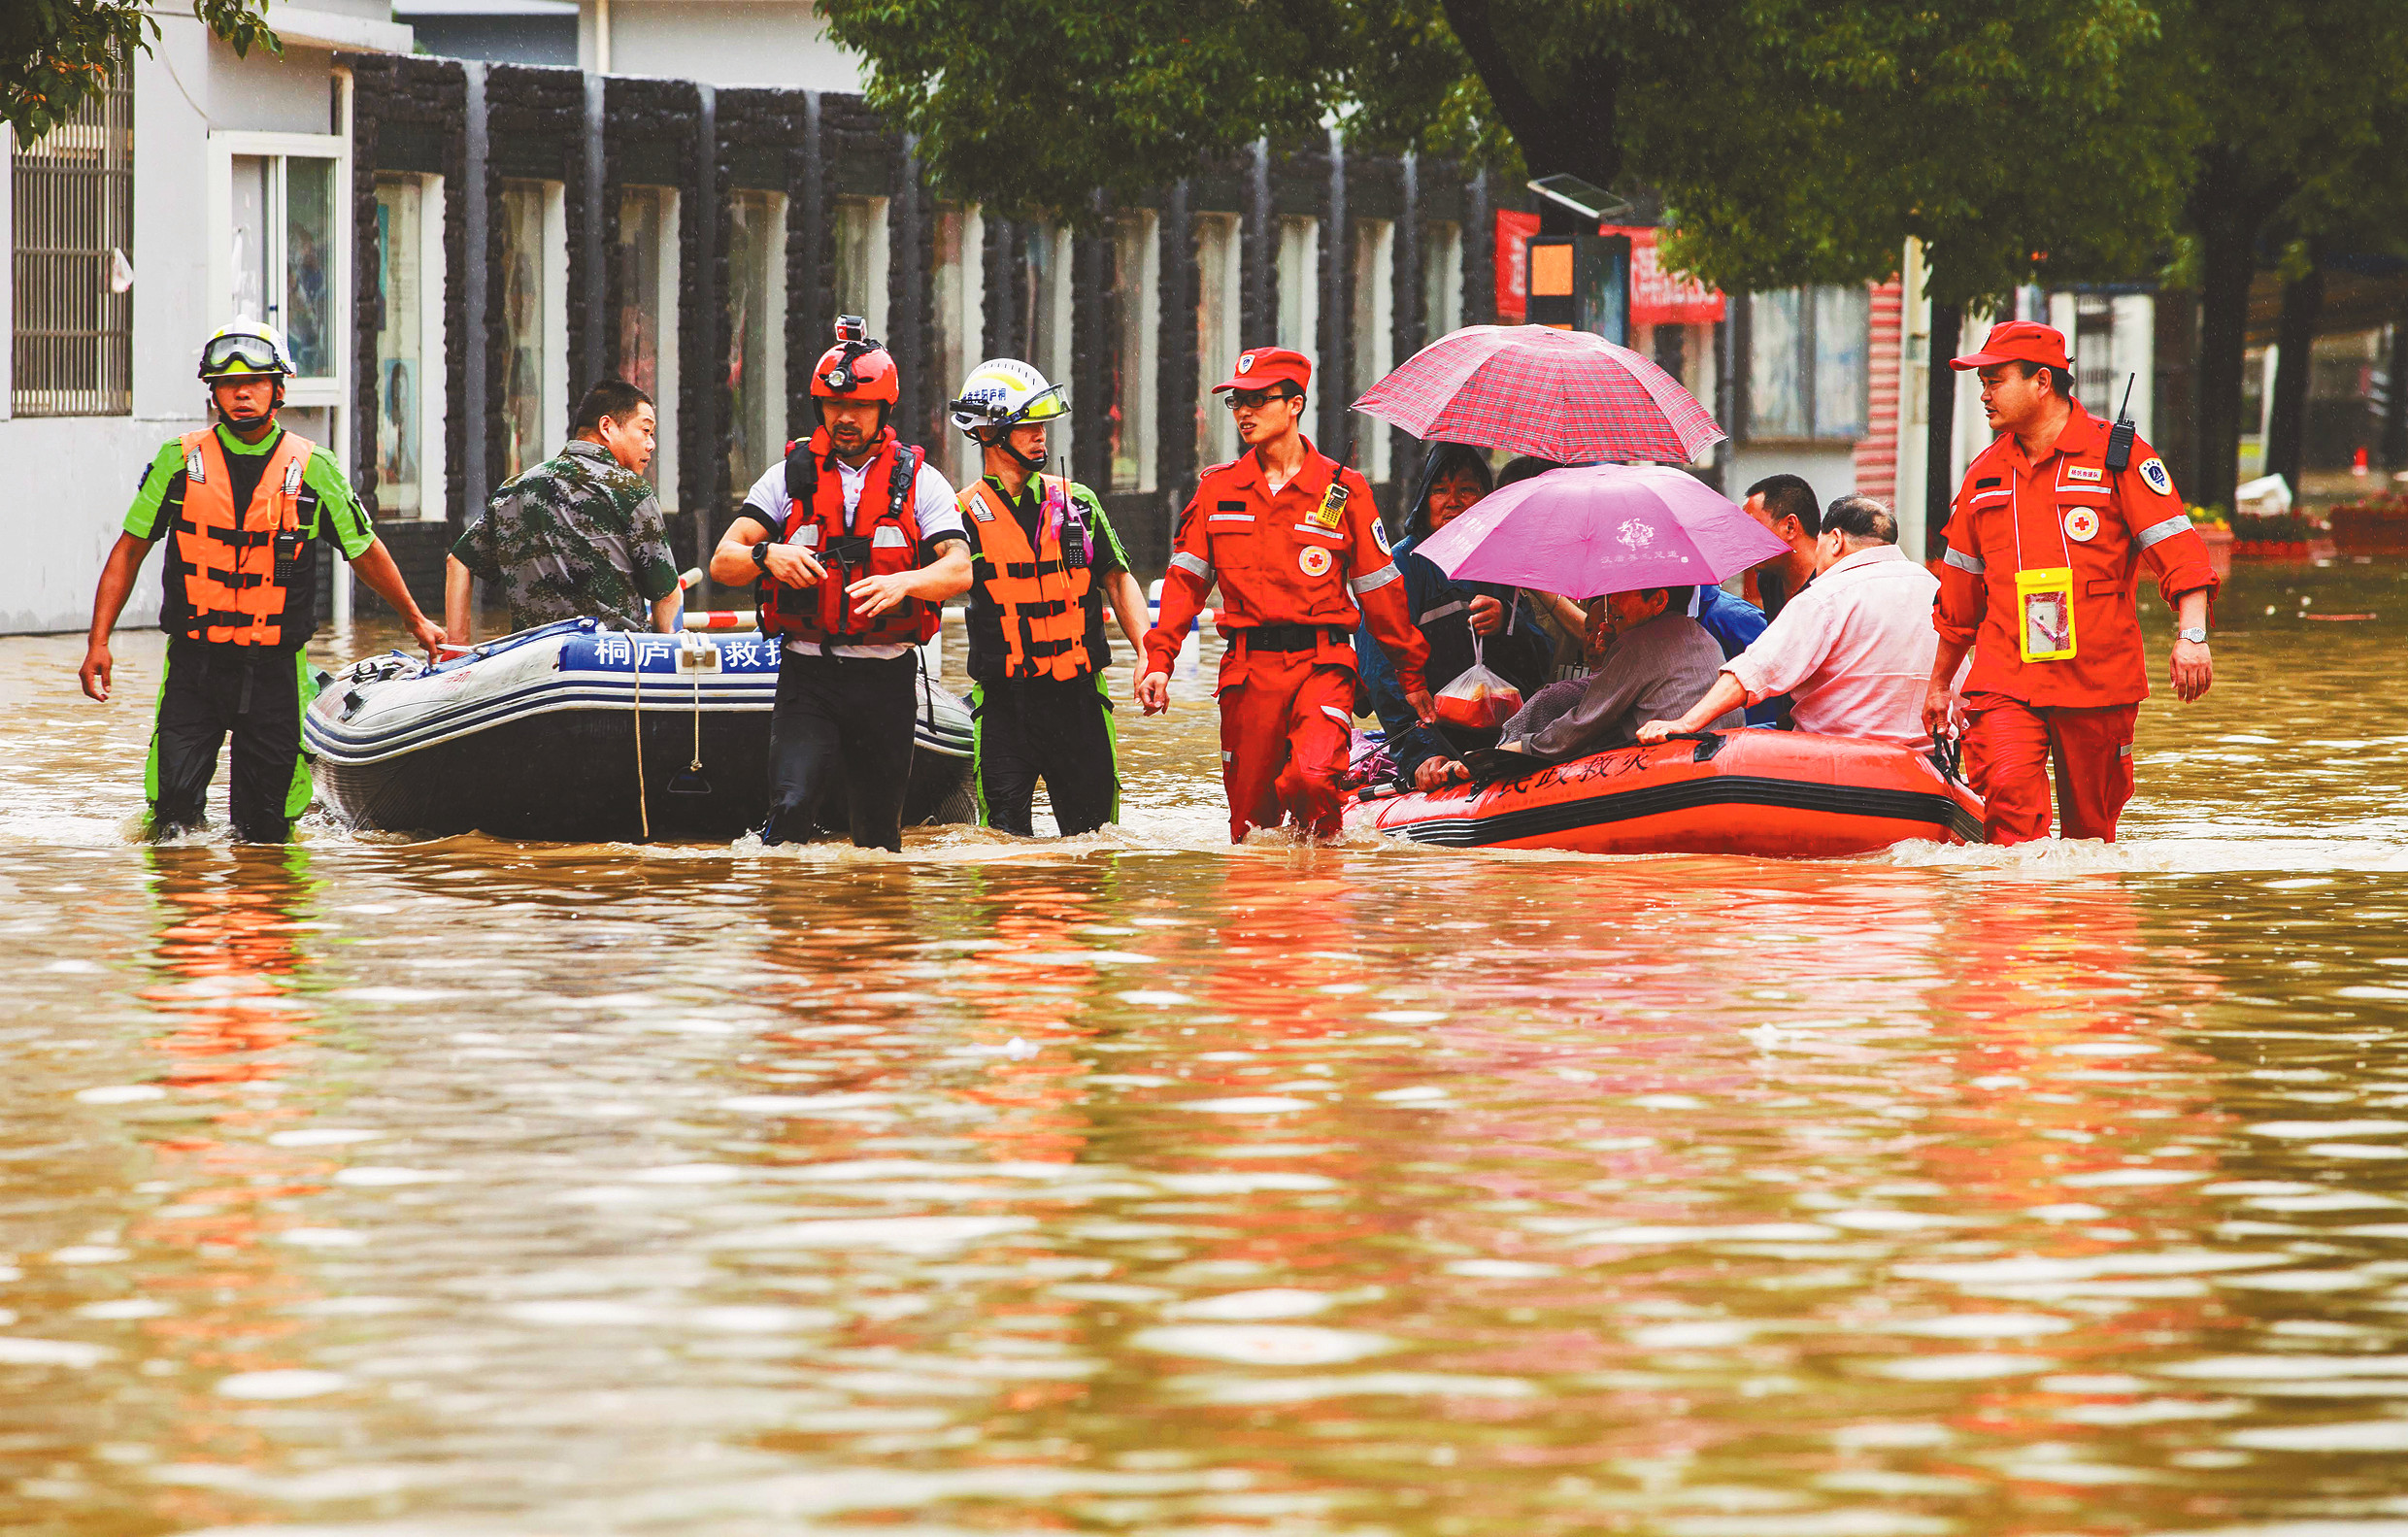 打开凤凰新闻,查看更多高清图片在河南暴雨中,存在着一个特别的能量